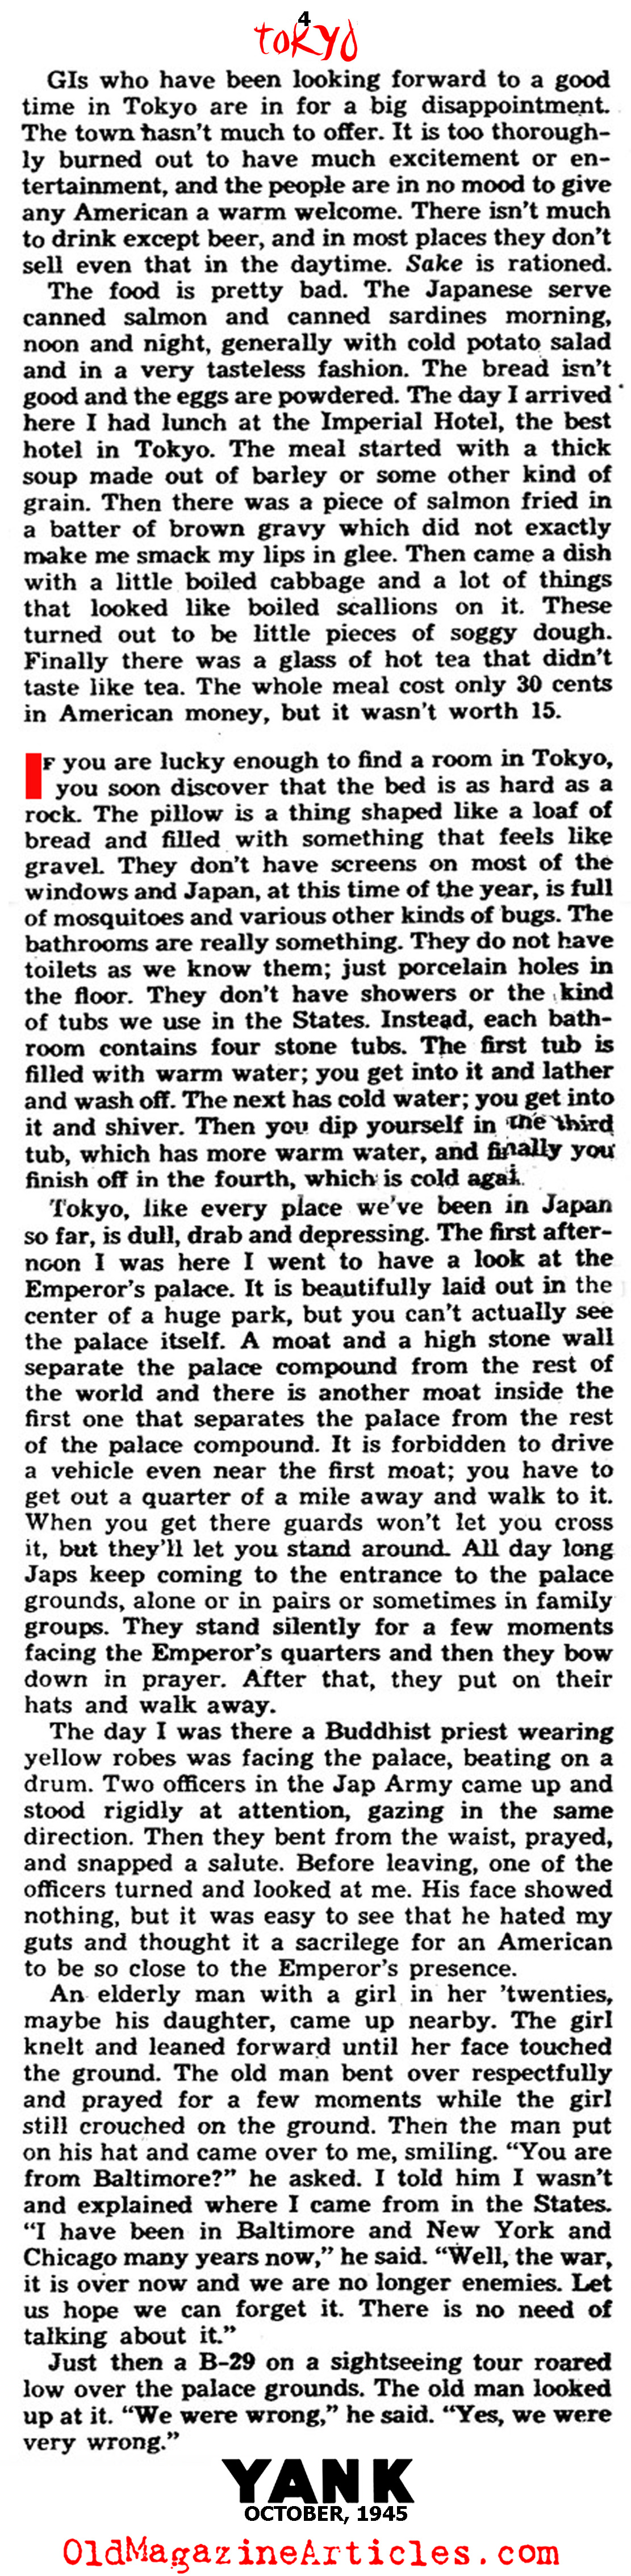 An Eye-Full of Post-War Tokyo (Yank Magazine, 1945)